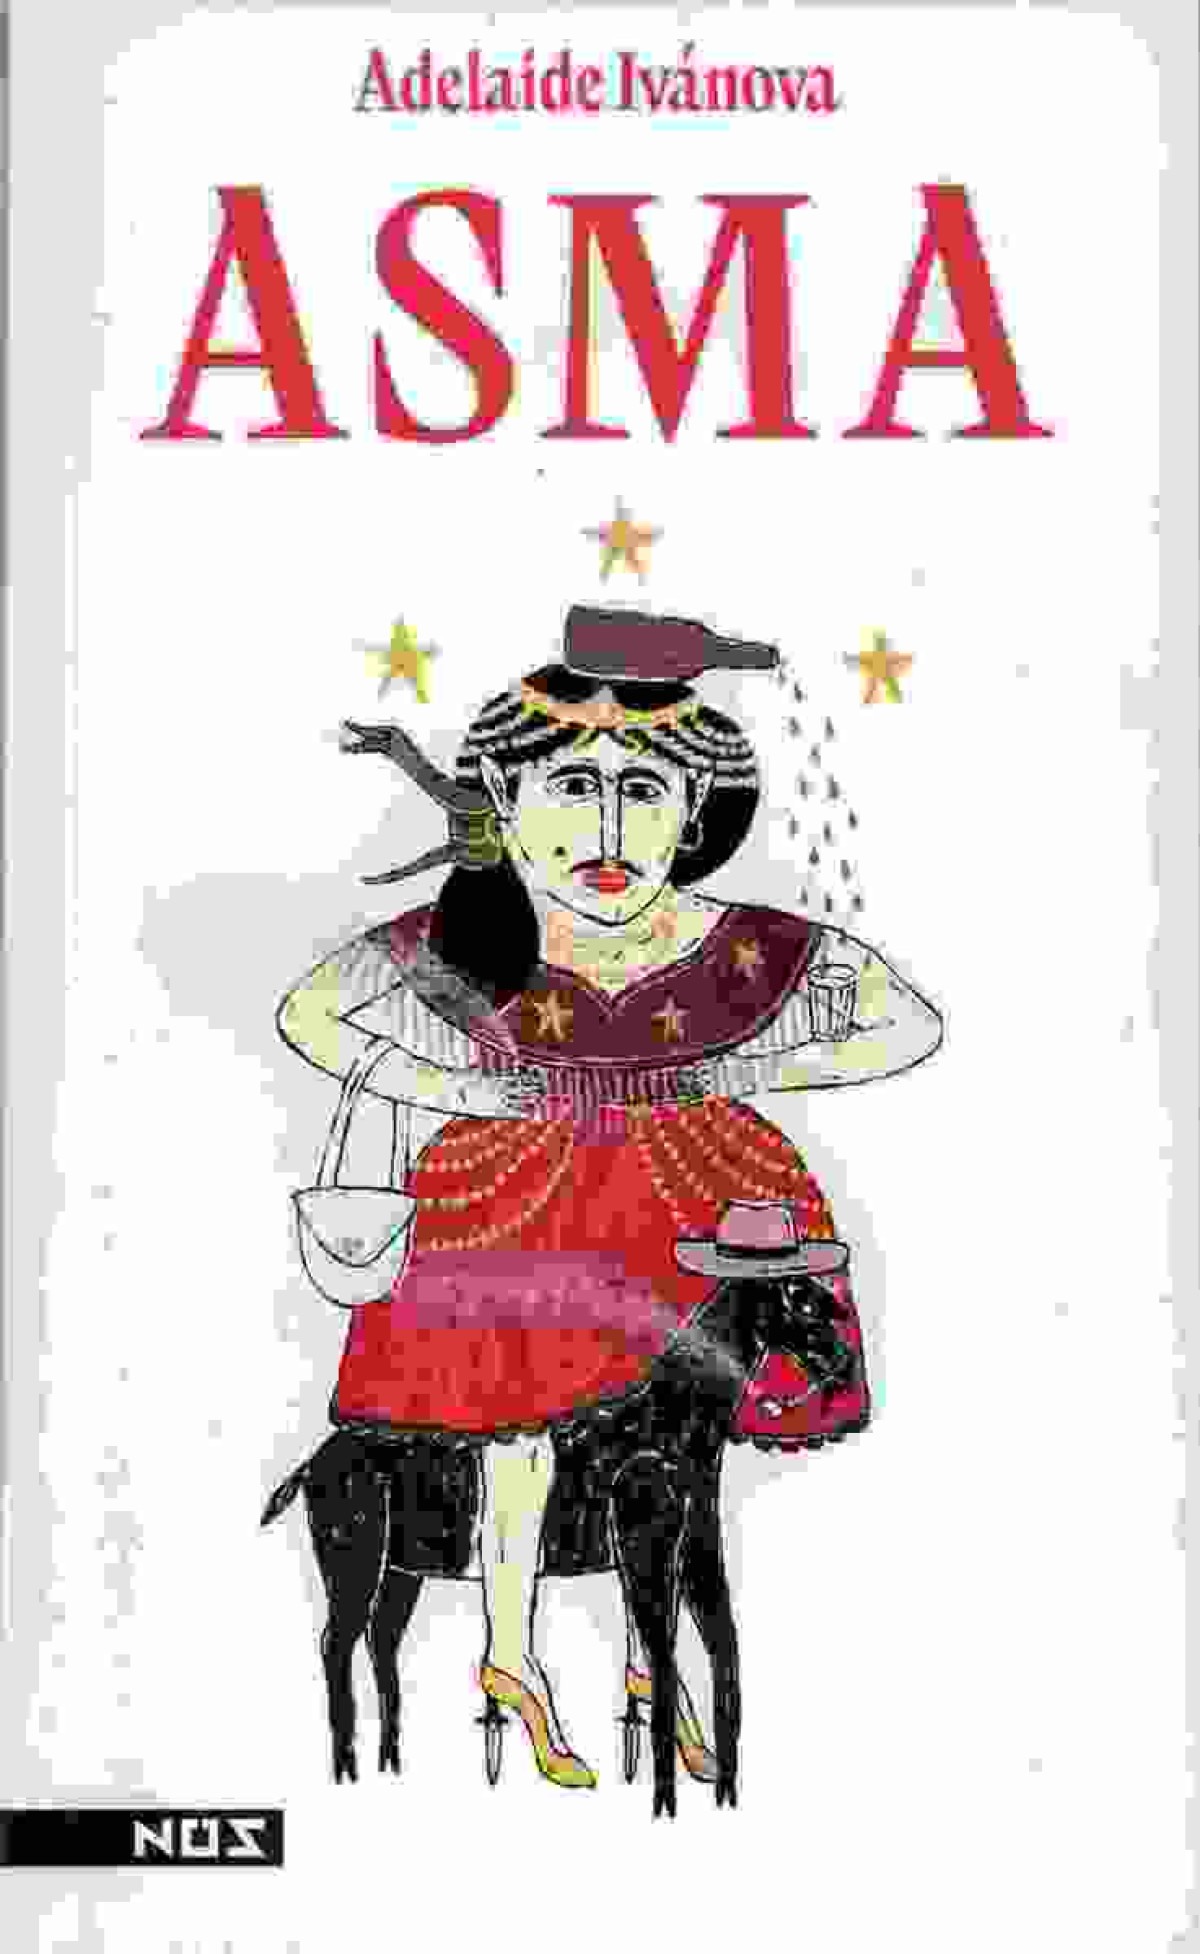 Capa do livro "Asma"